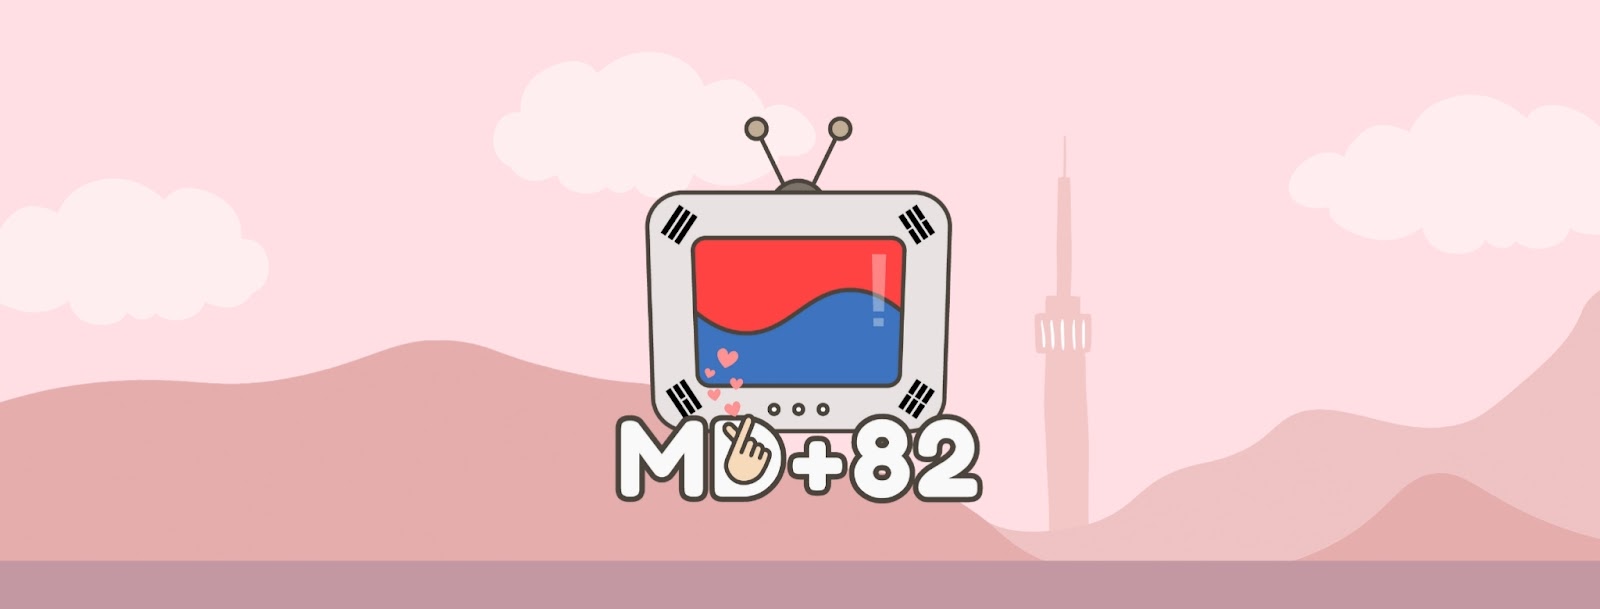 MD+82  韓國影視研究雞精會